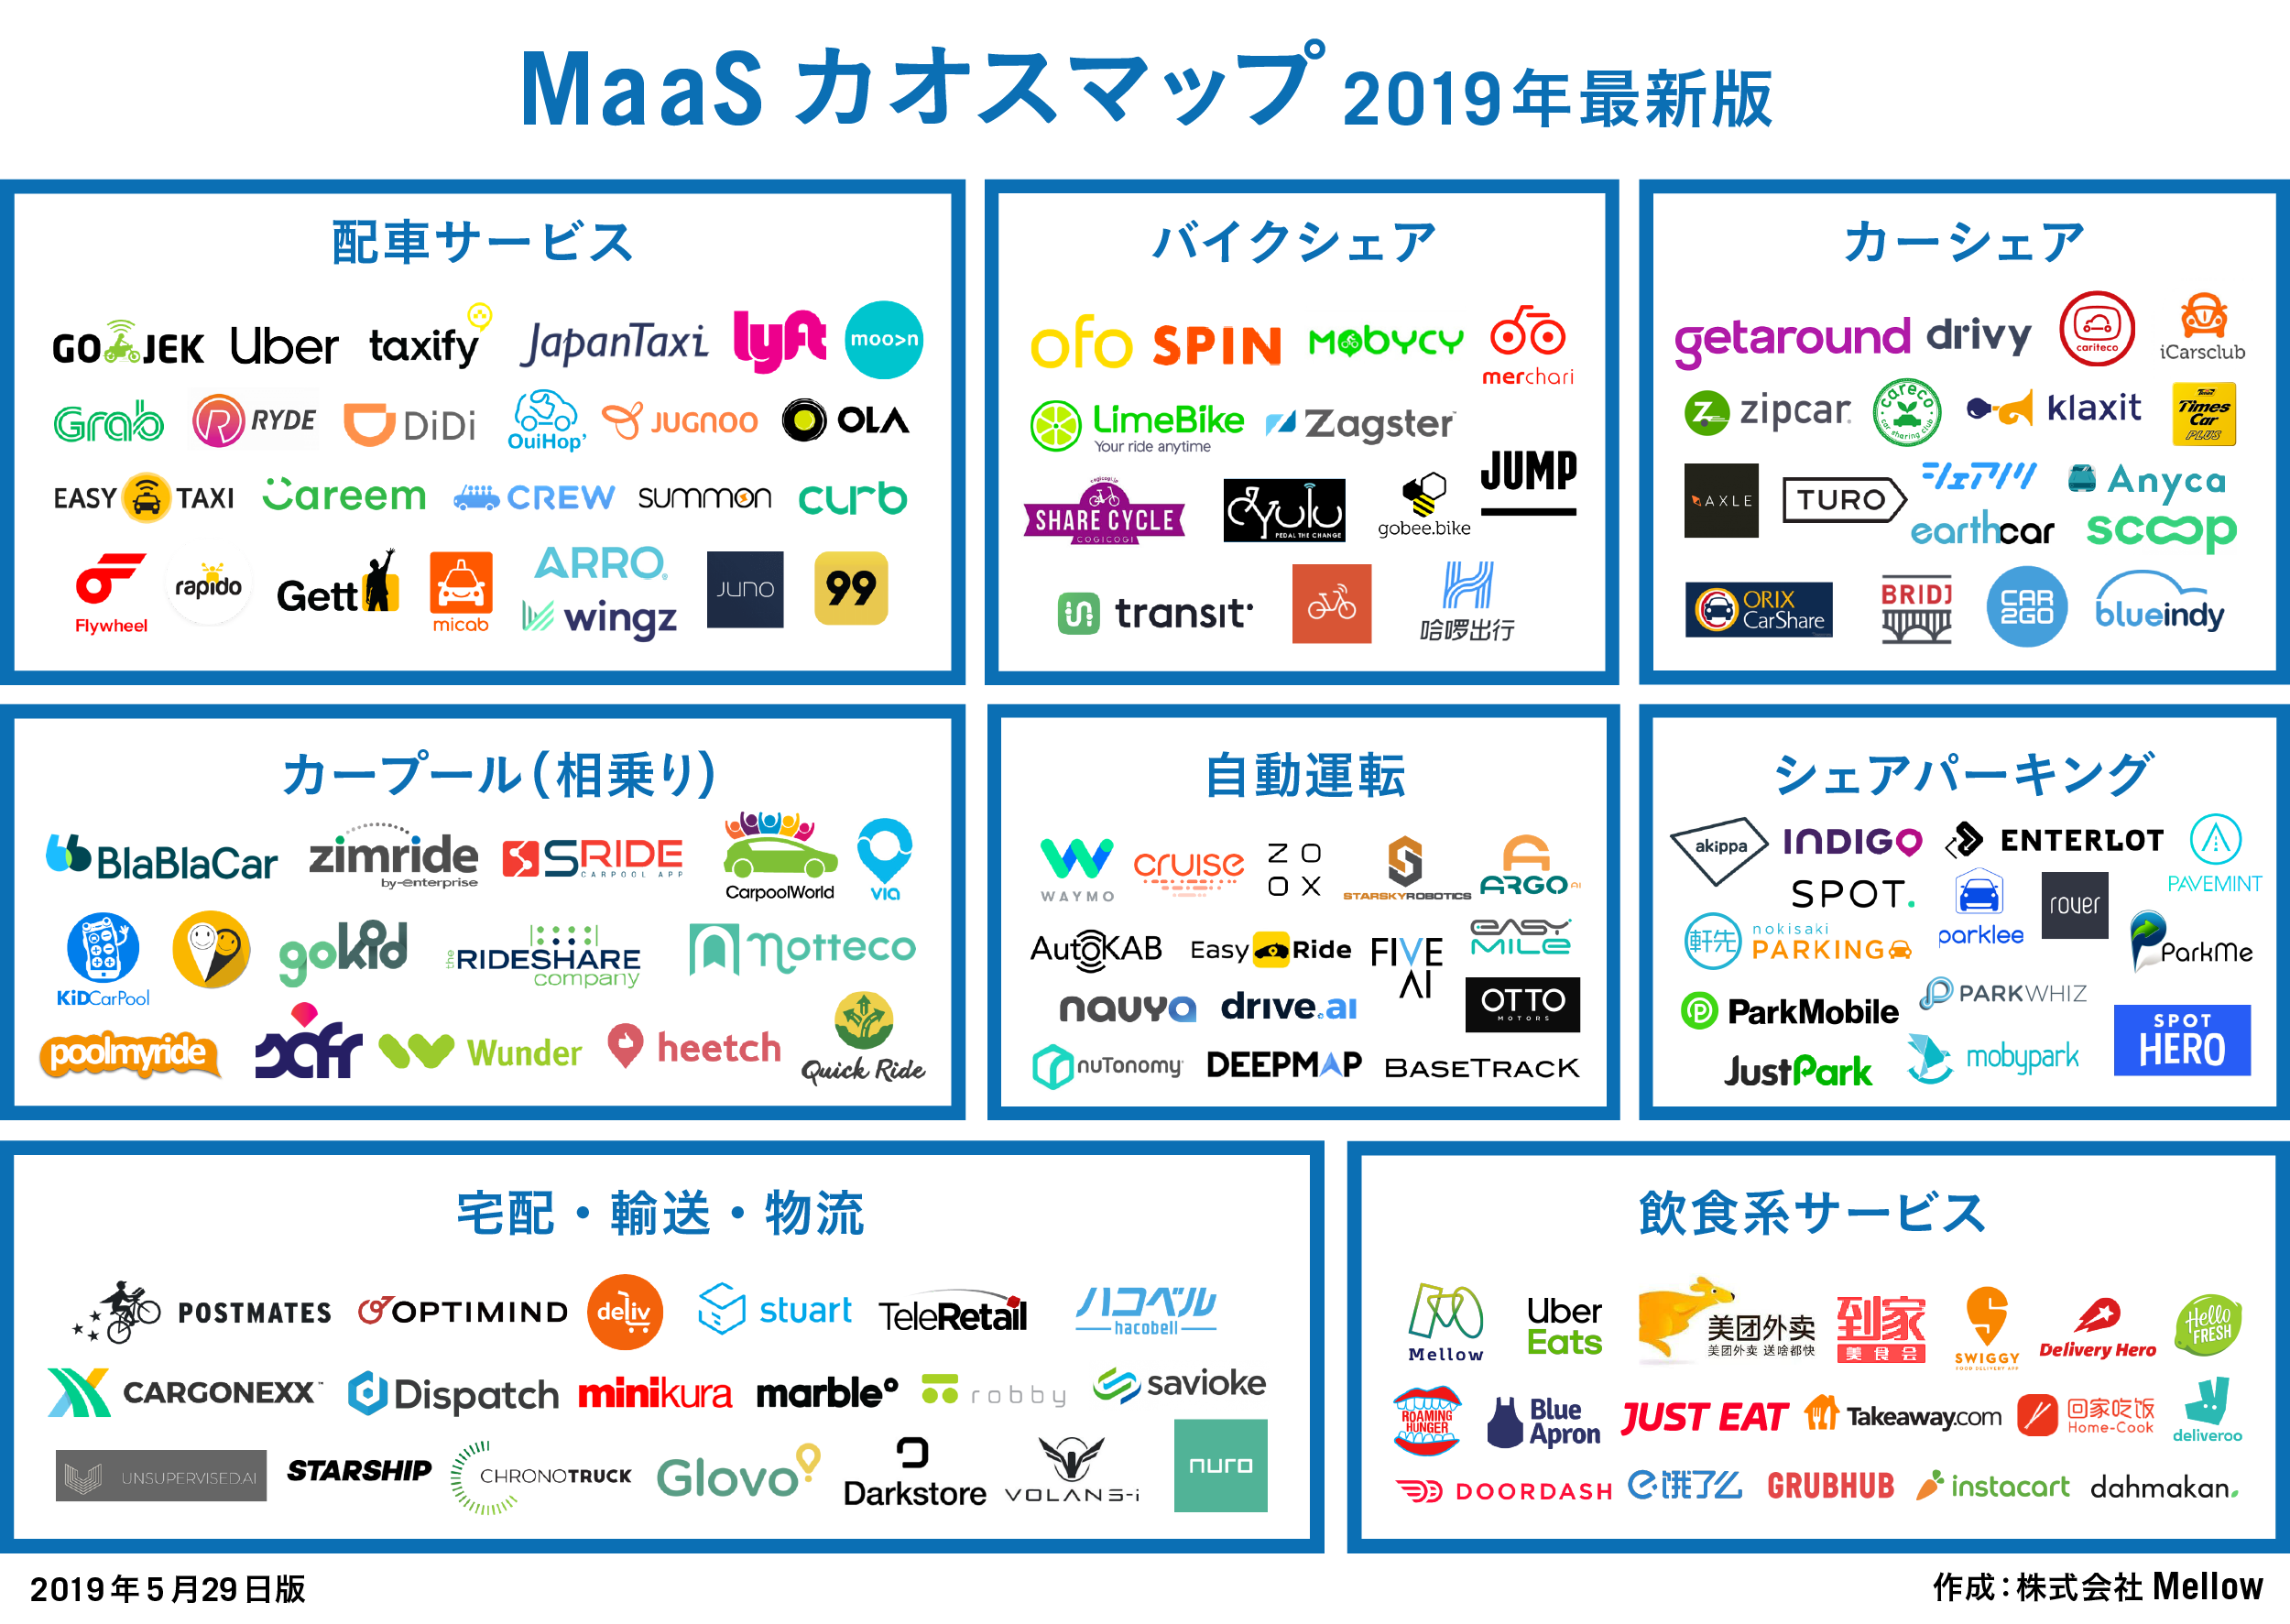 Mellow 世界のmaas企業 カオスマップ 2019年度版を日本初公開 株式会社mellowのプレスリリース